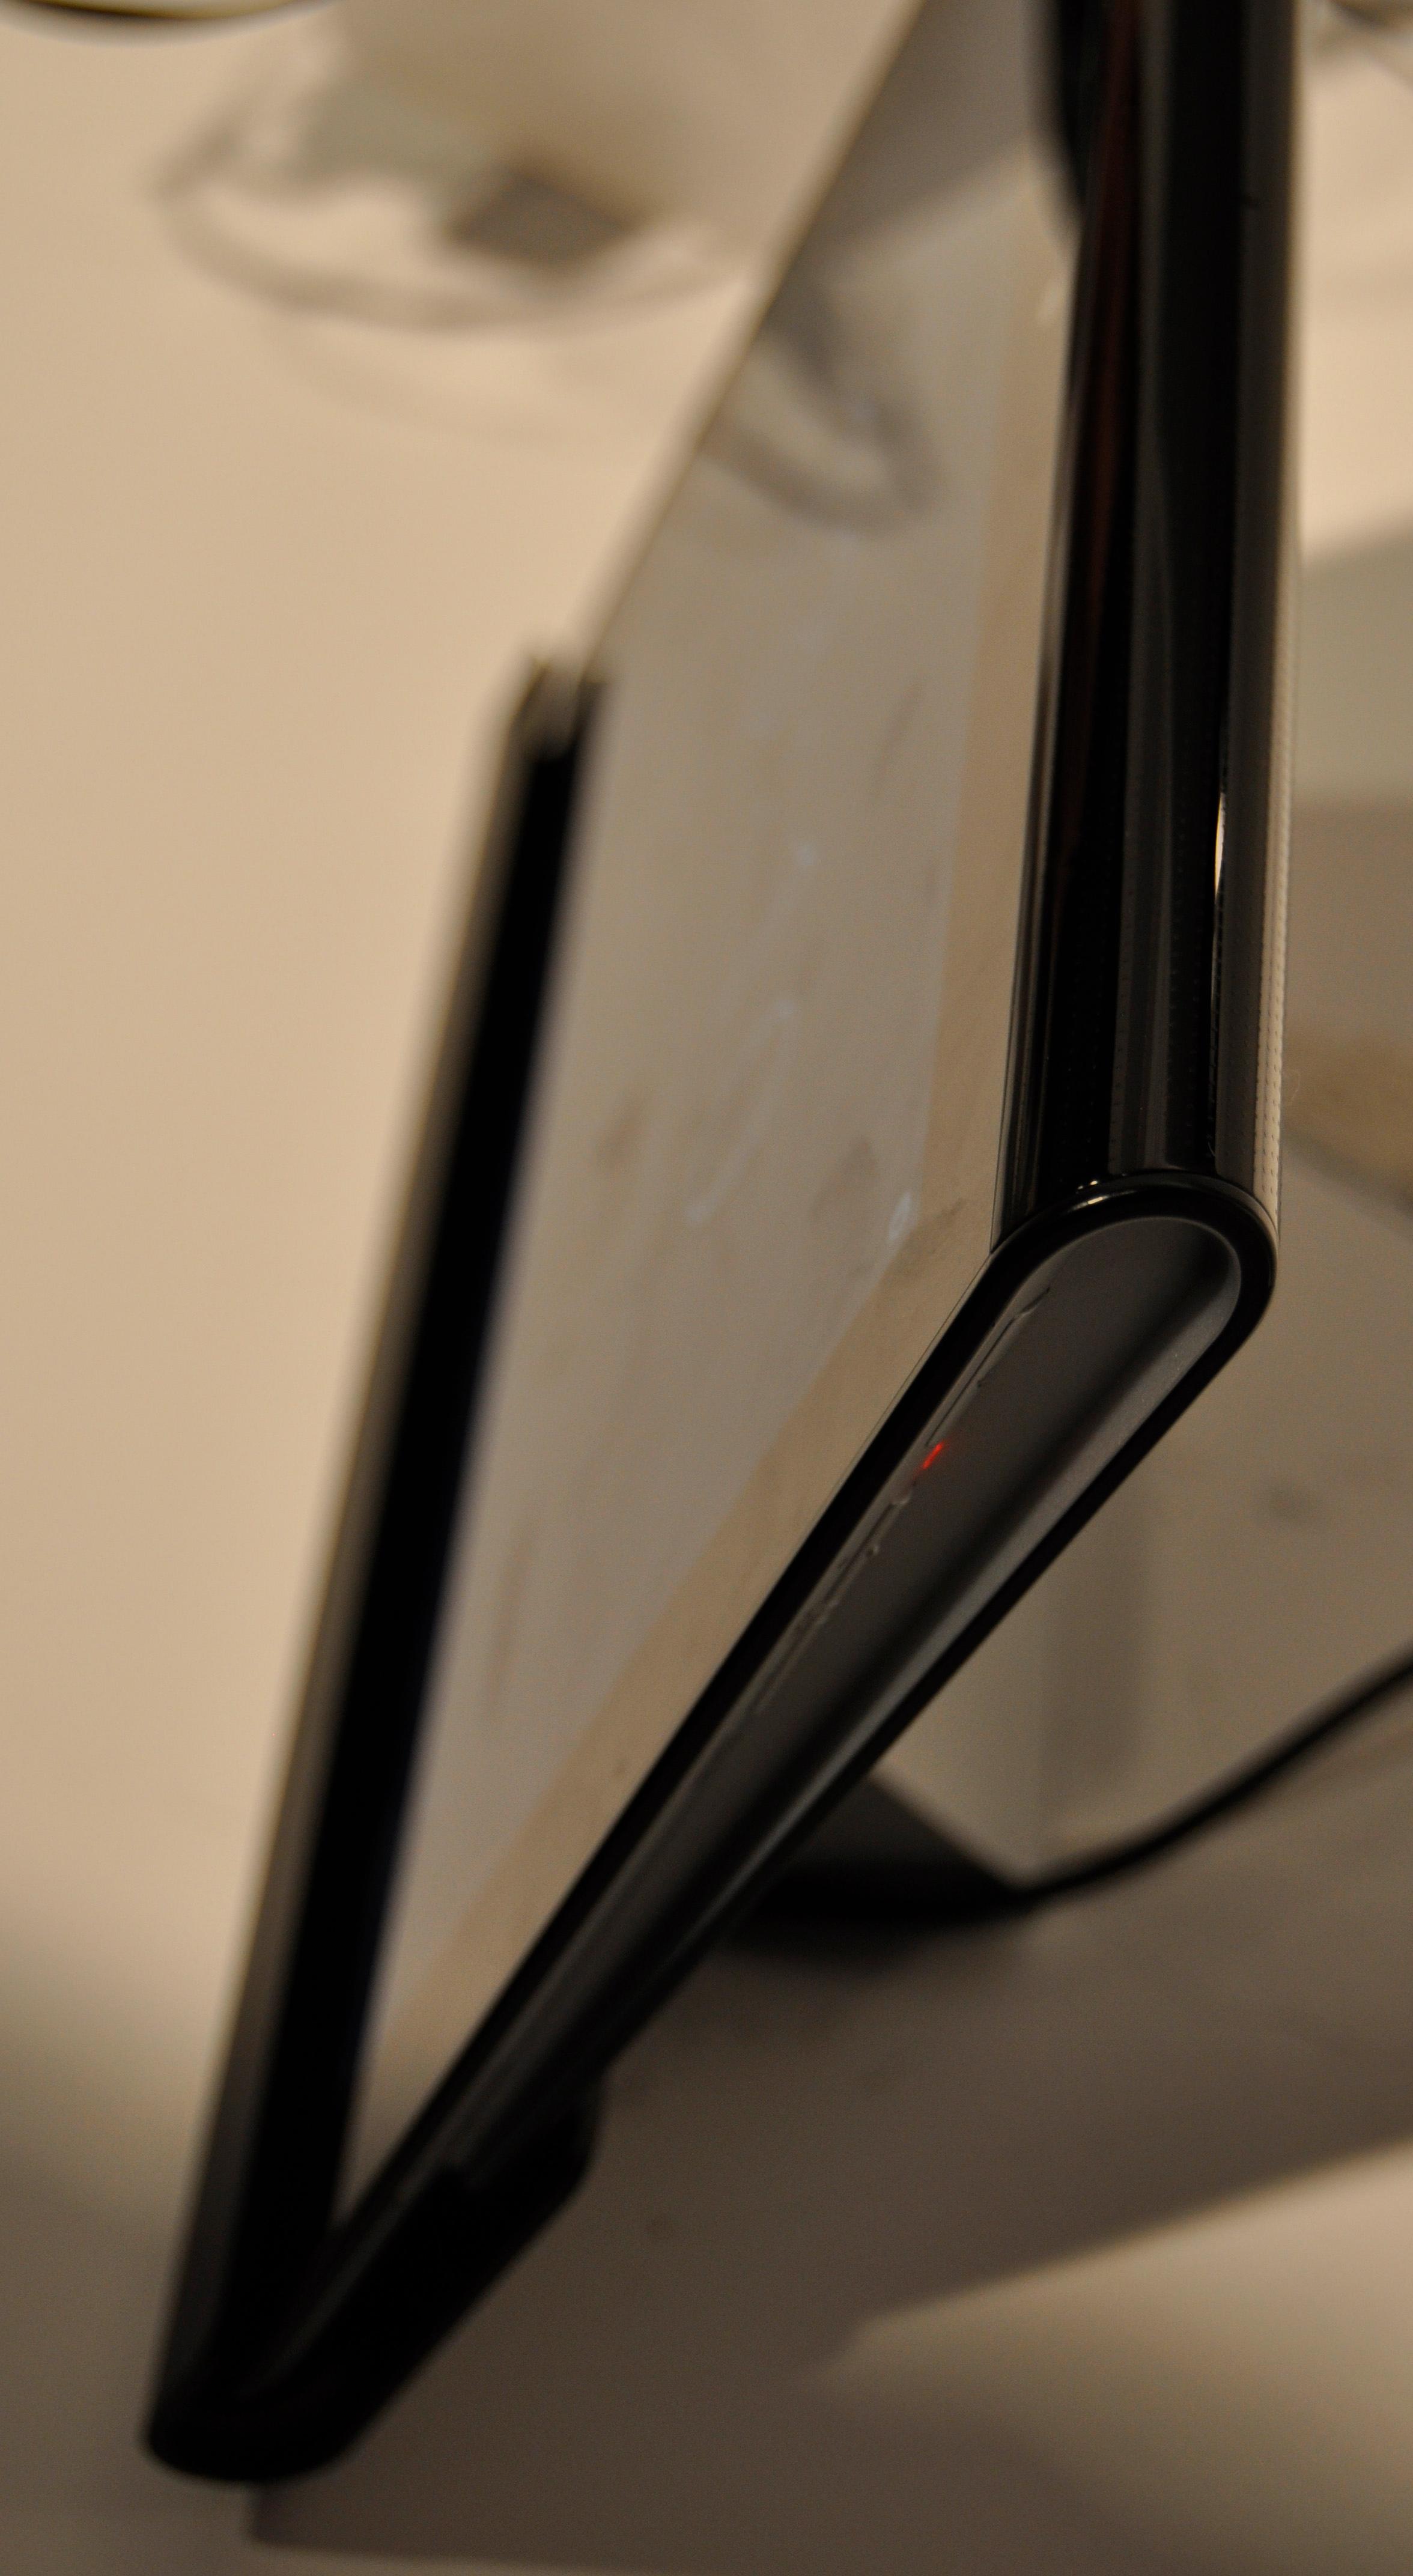 Sony Tablet S skiller seg tydelig fra andre nettbrett i utforming. Her står det i Sonys egen ladekrybbe.